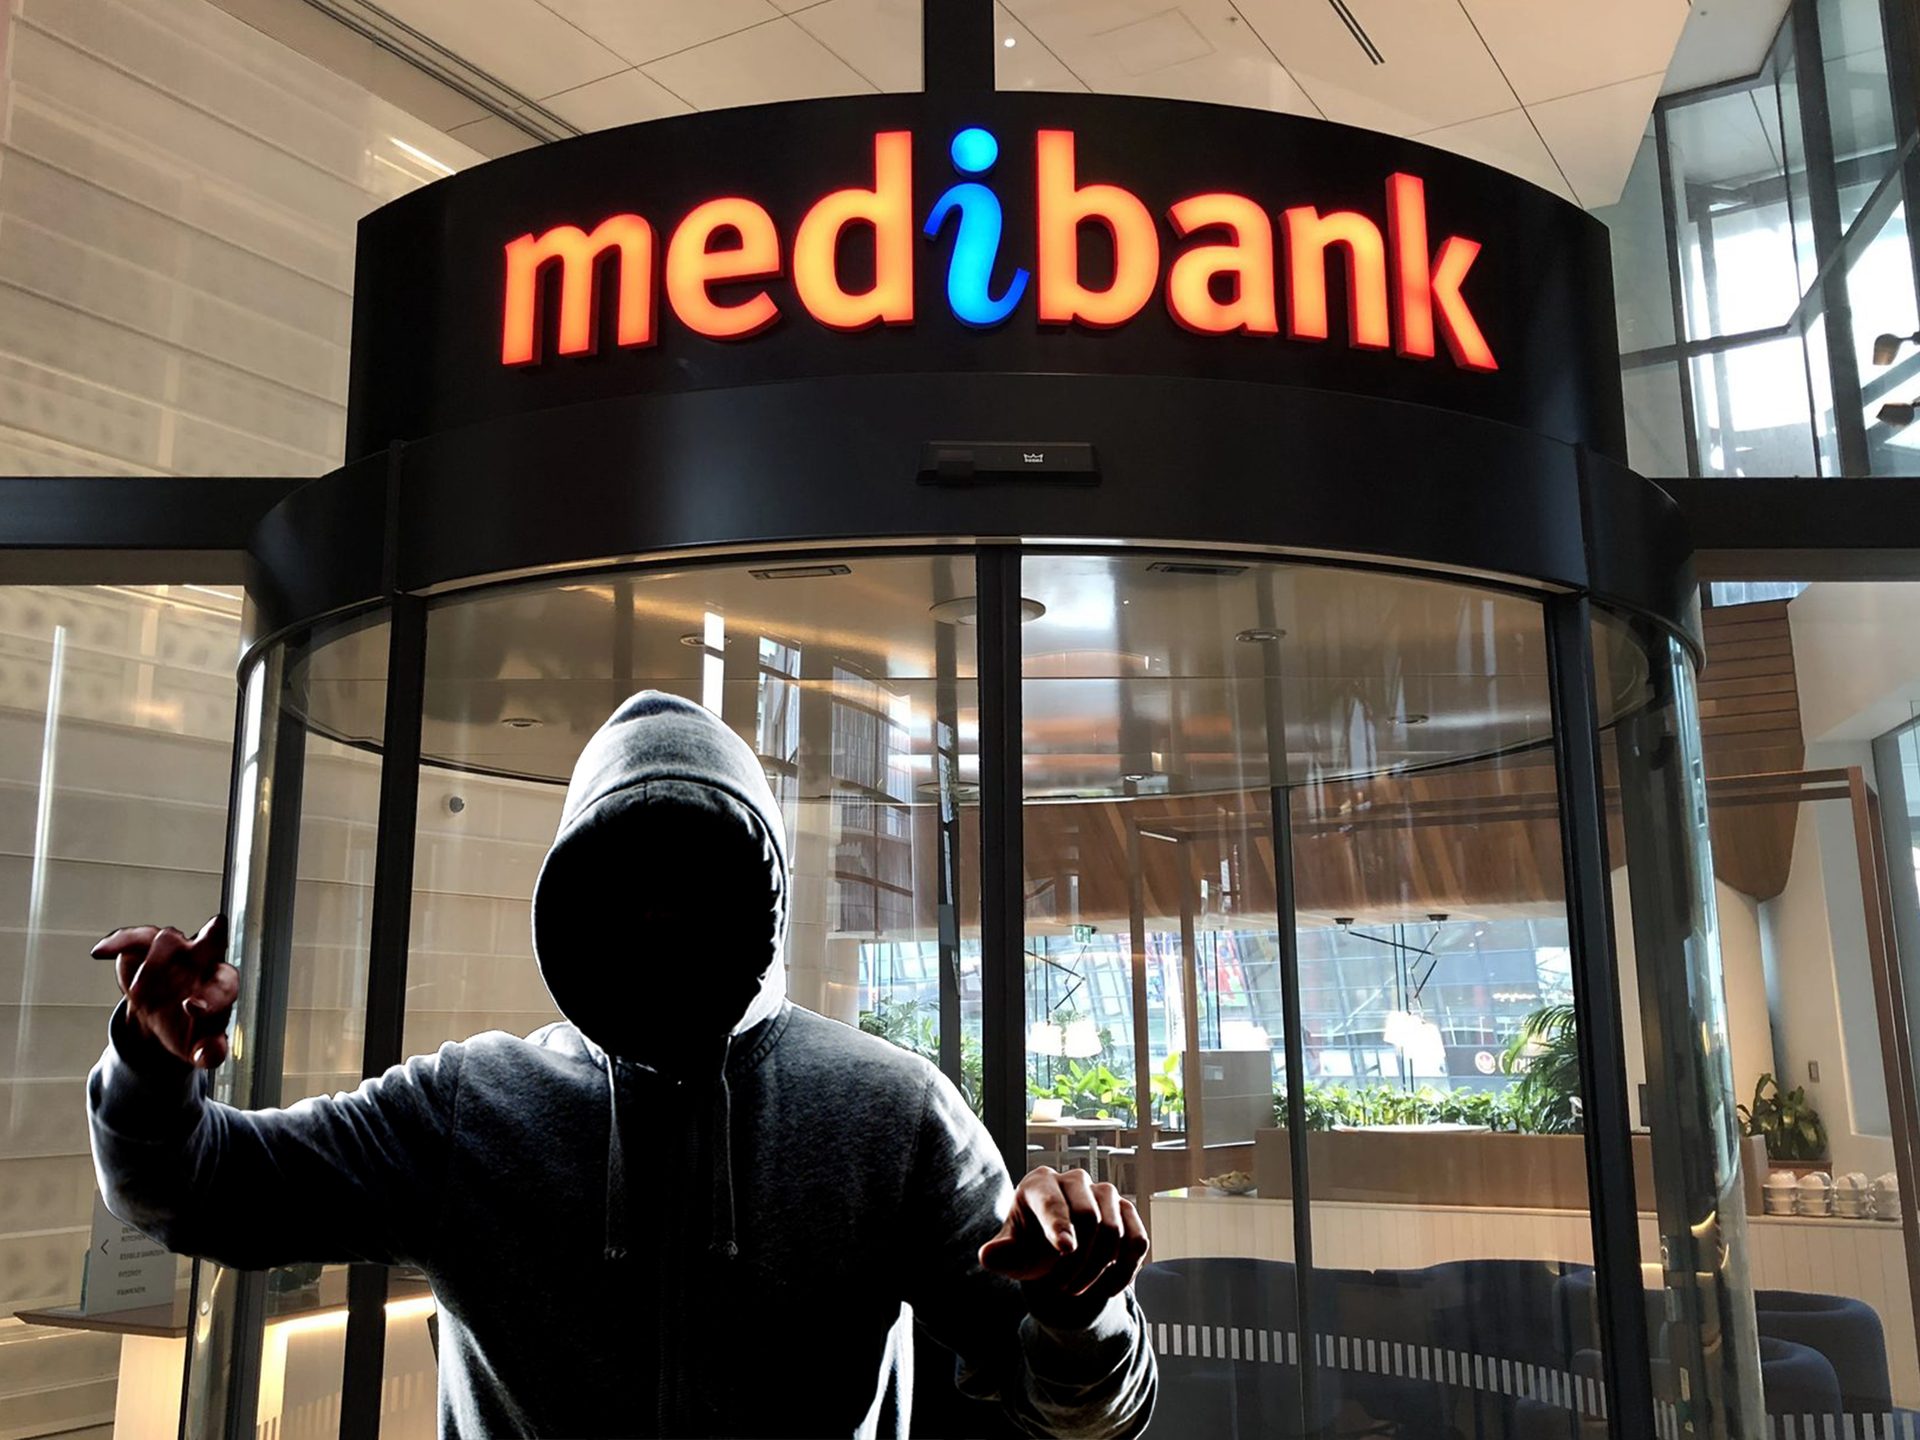 Medibank gruppesøgsmål forklaret: Husk Medibank databrud, deltag Medibank databrud gruppesøgsmål, og få Medibank kompensation på op til $20,000.